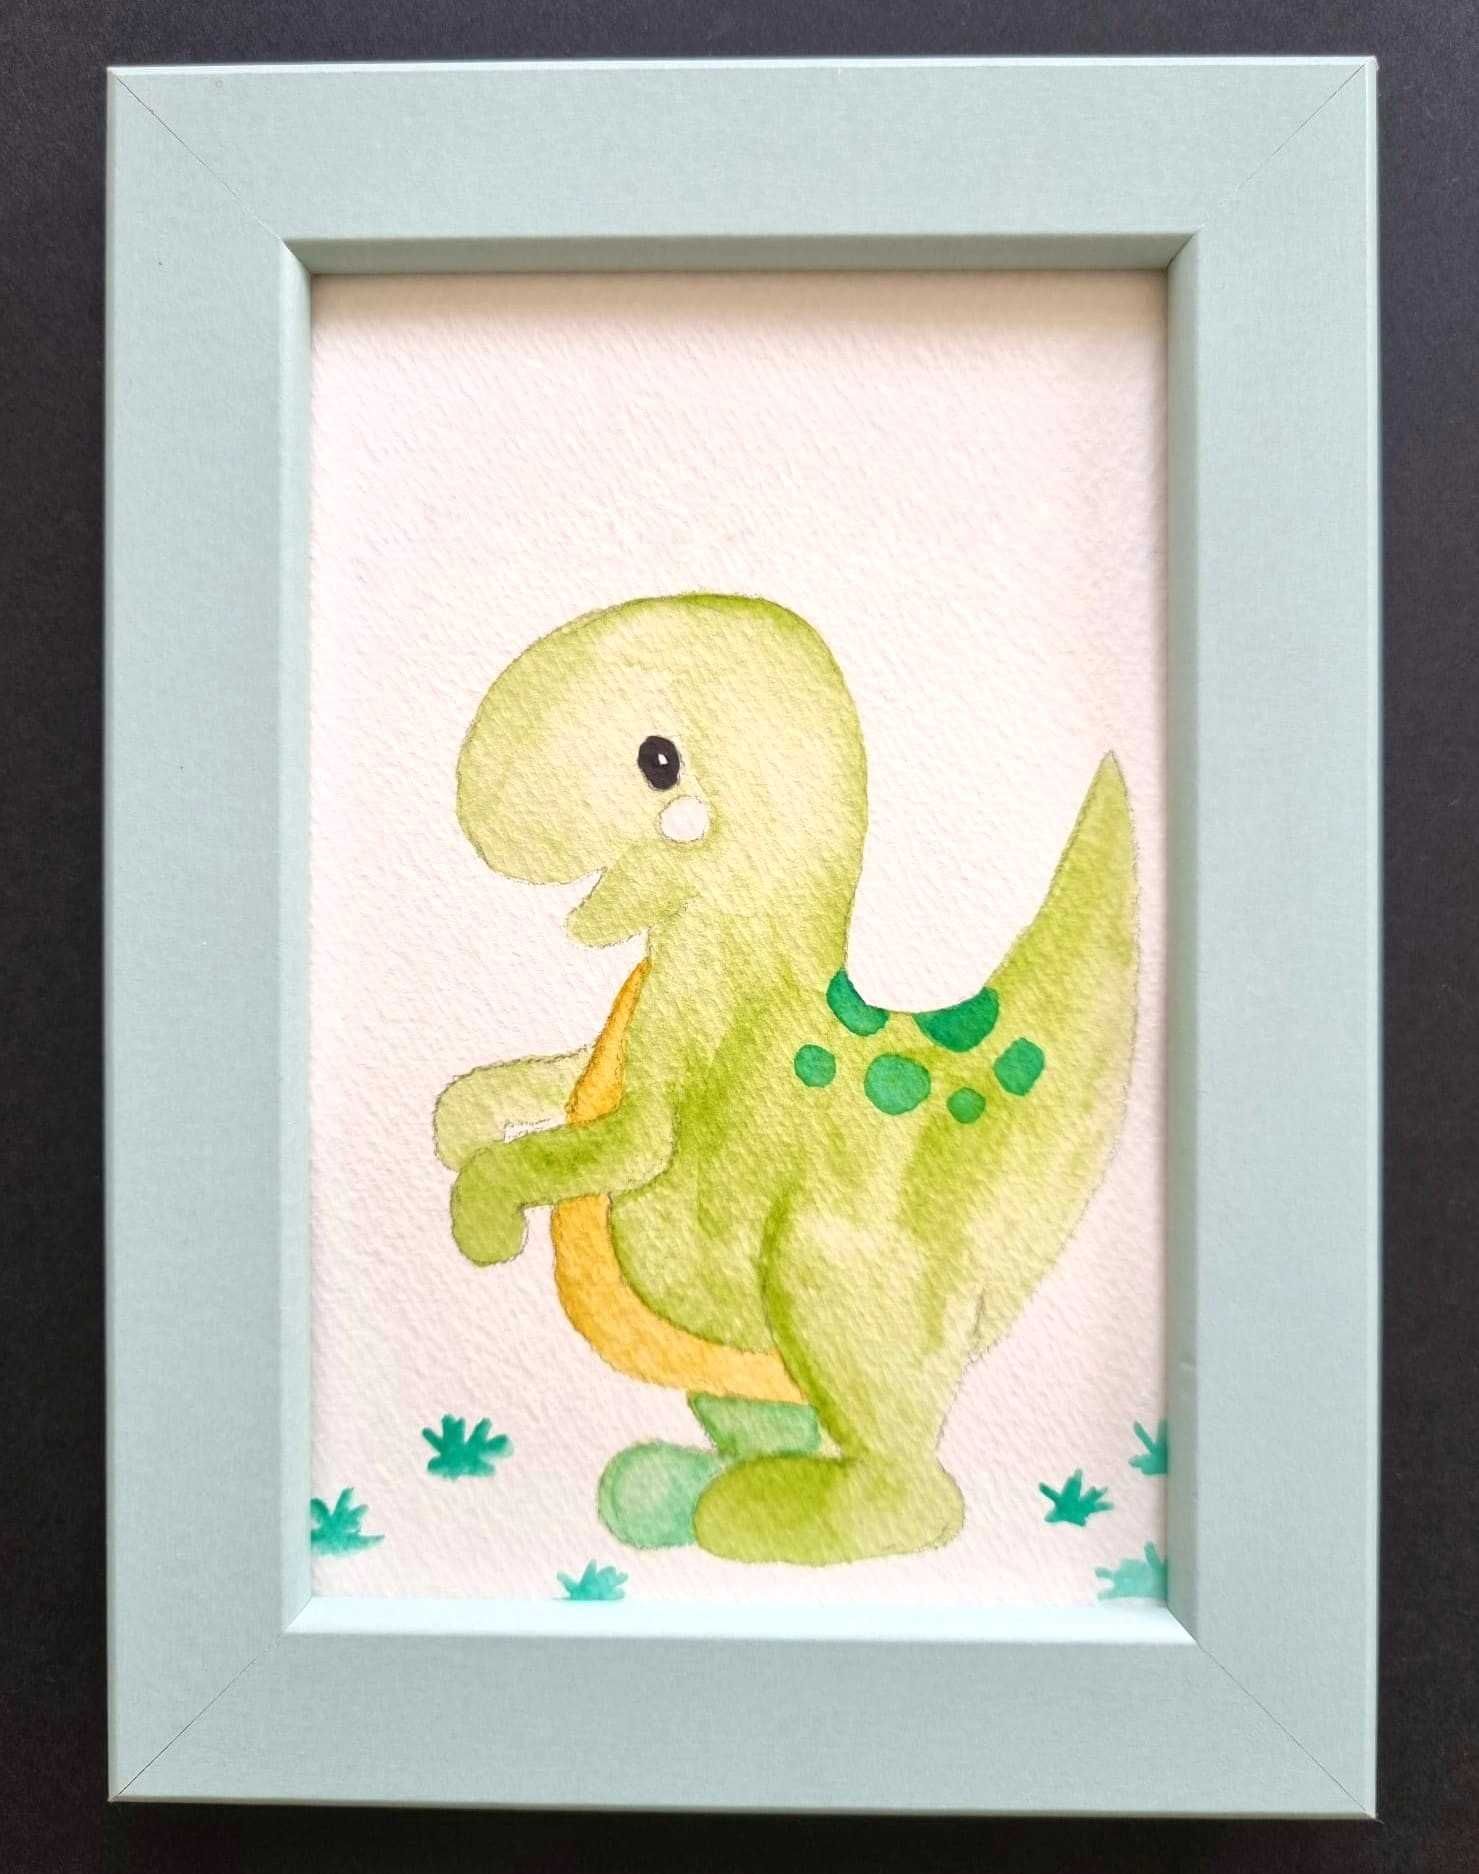 Quadro infantil para decoração com design dinossauro- moldura incluída